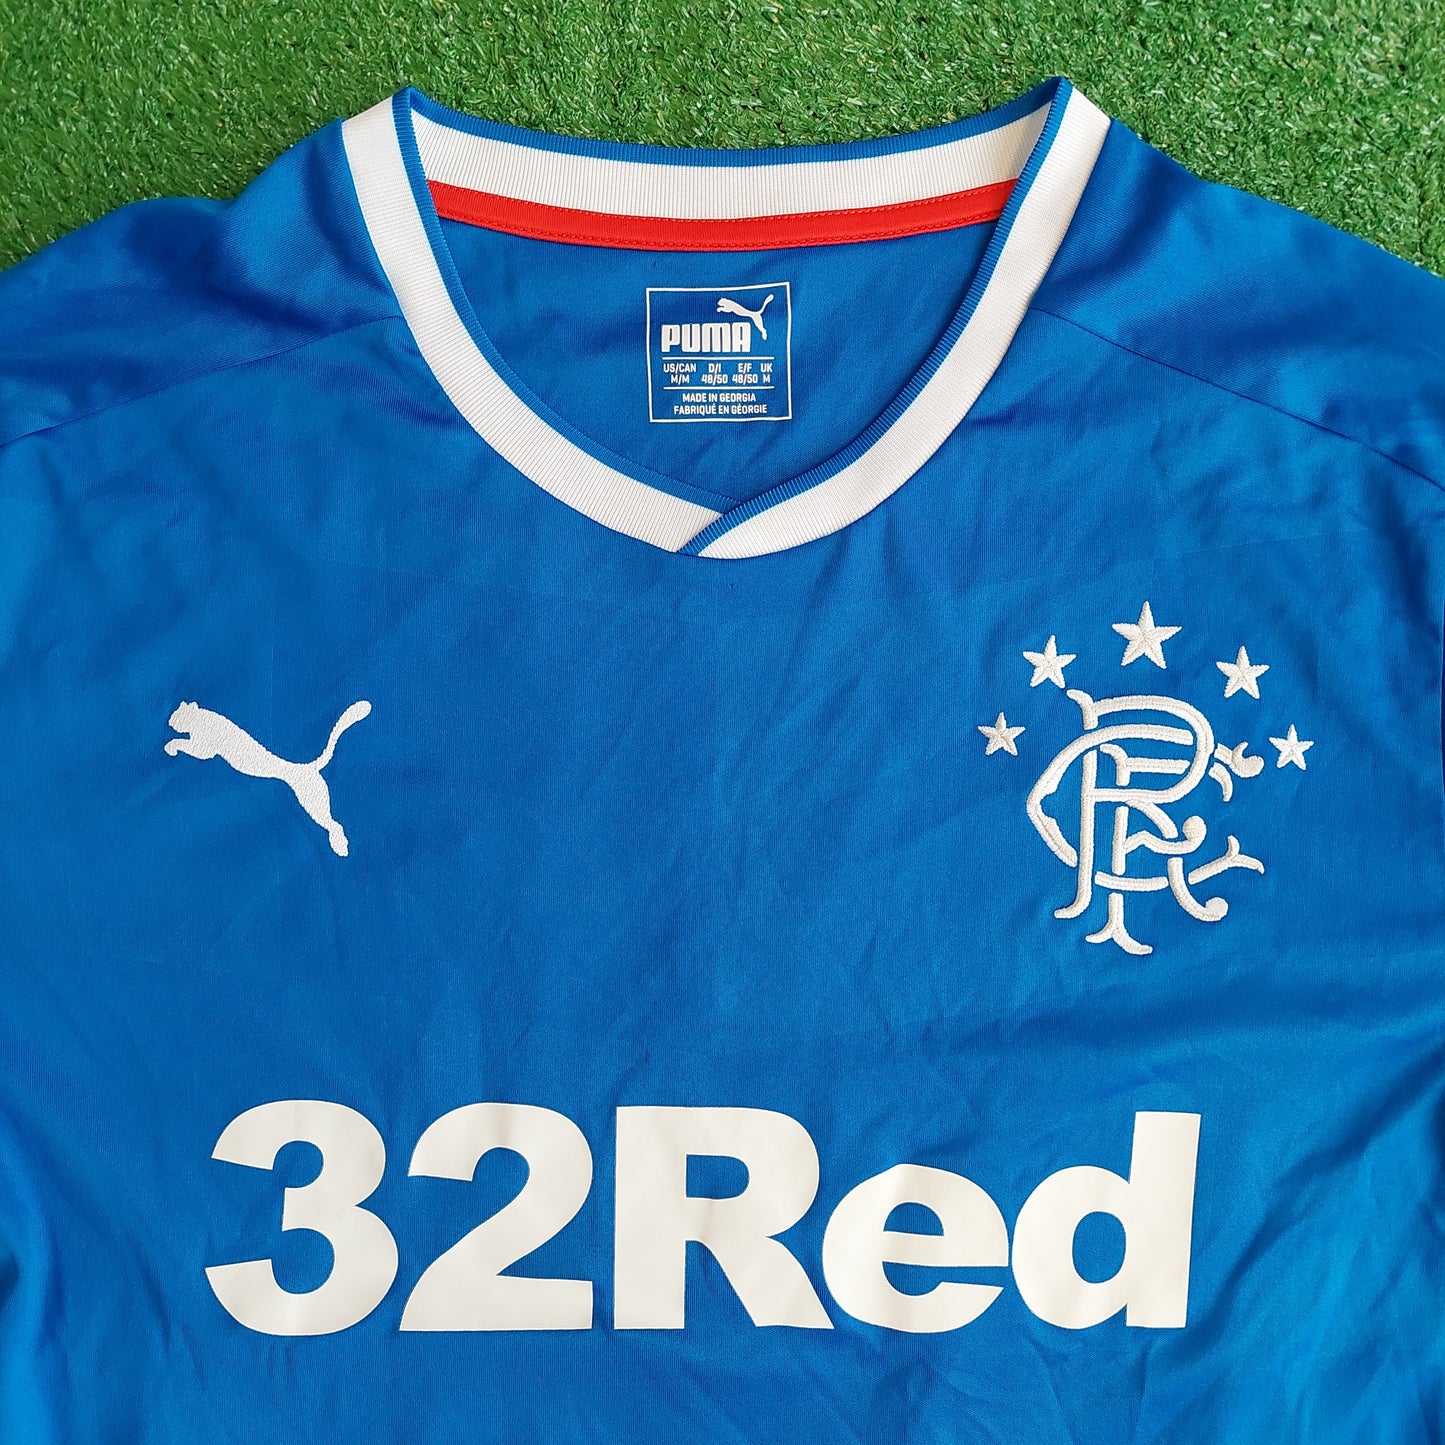 Rangers F.C. 2017/18 Home Shirt (Excellent) - Size M